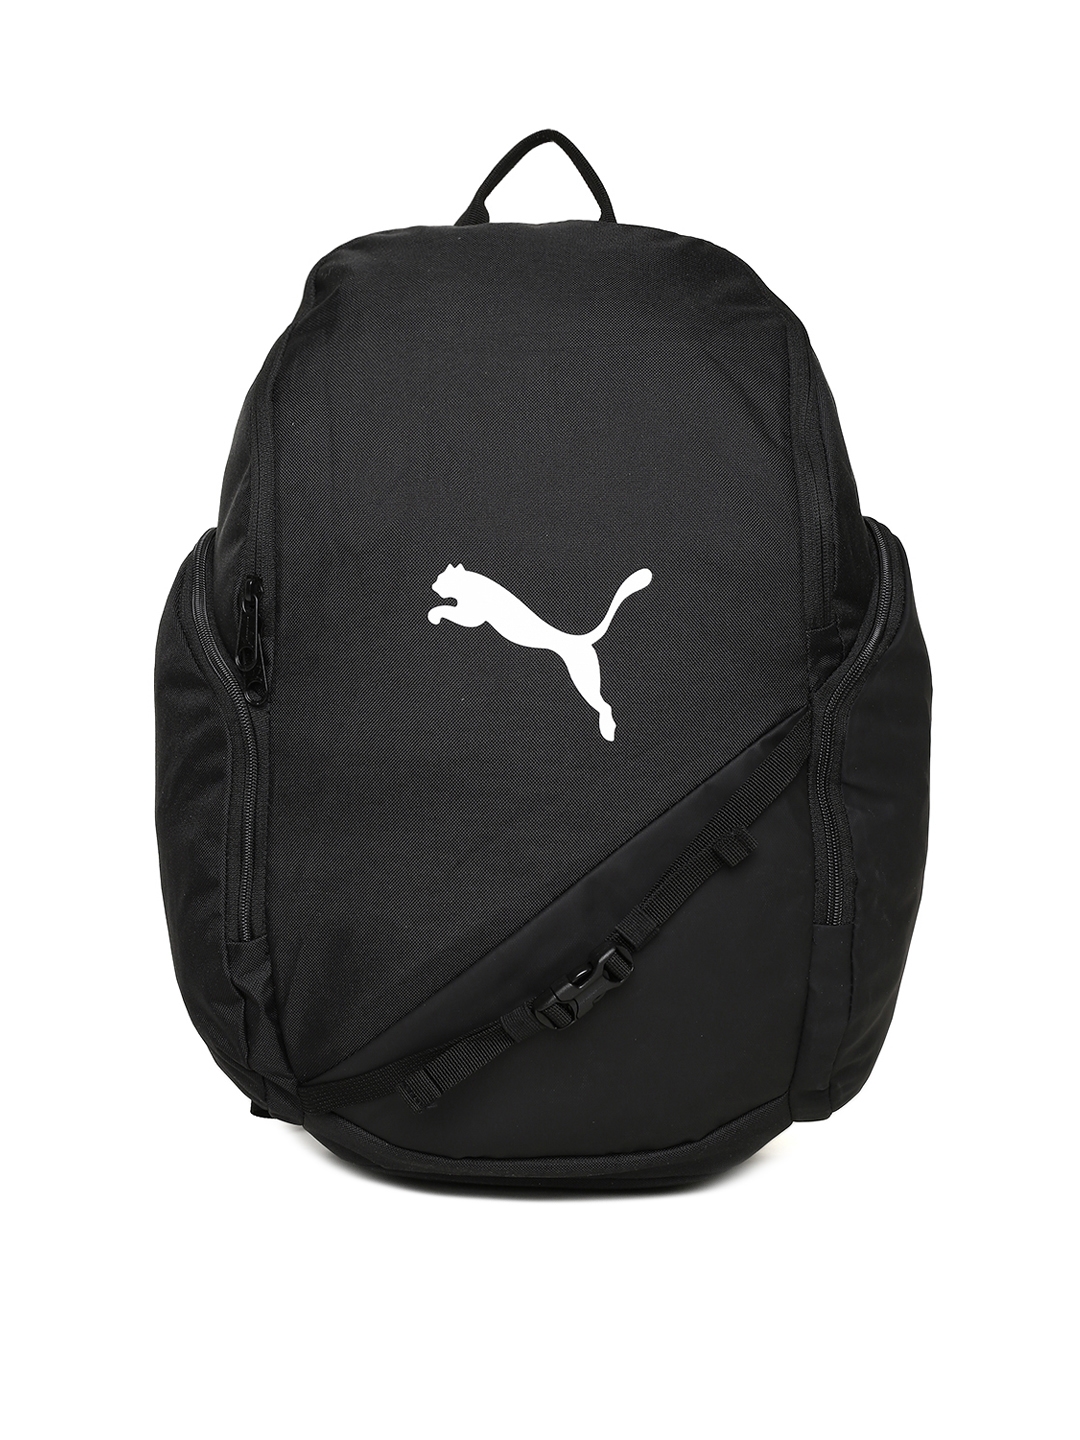 Puma Unisex Black Solid LIGA Backpack 